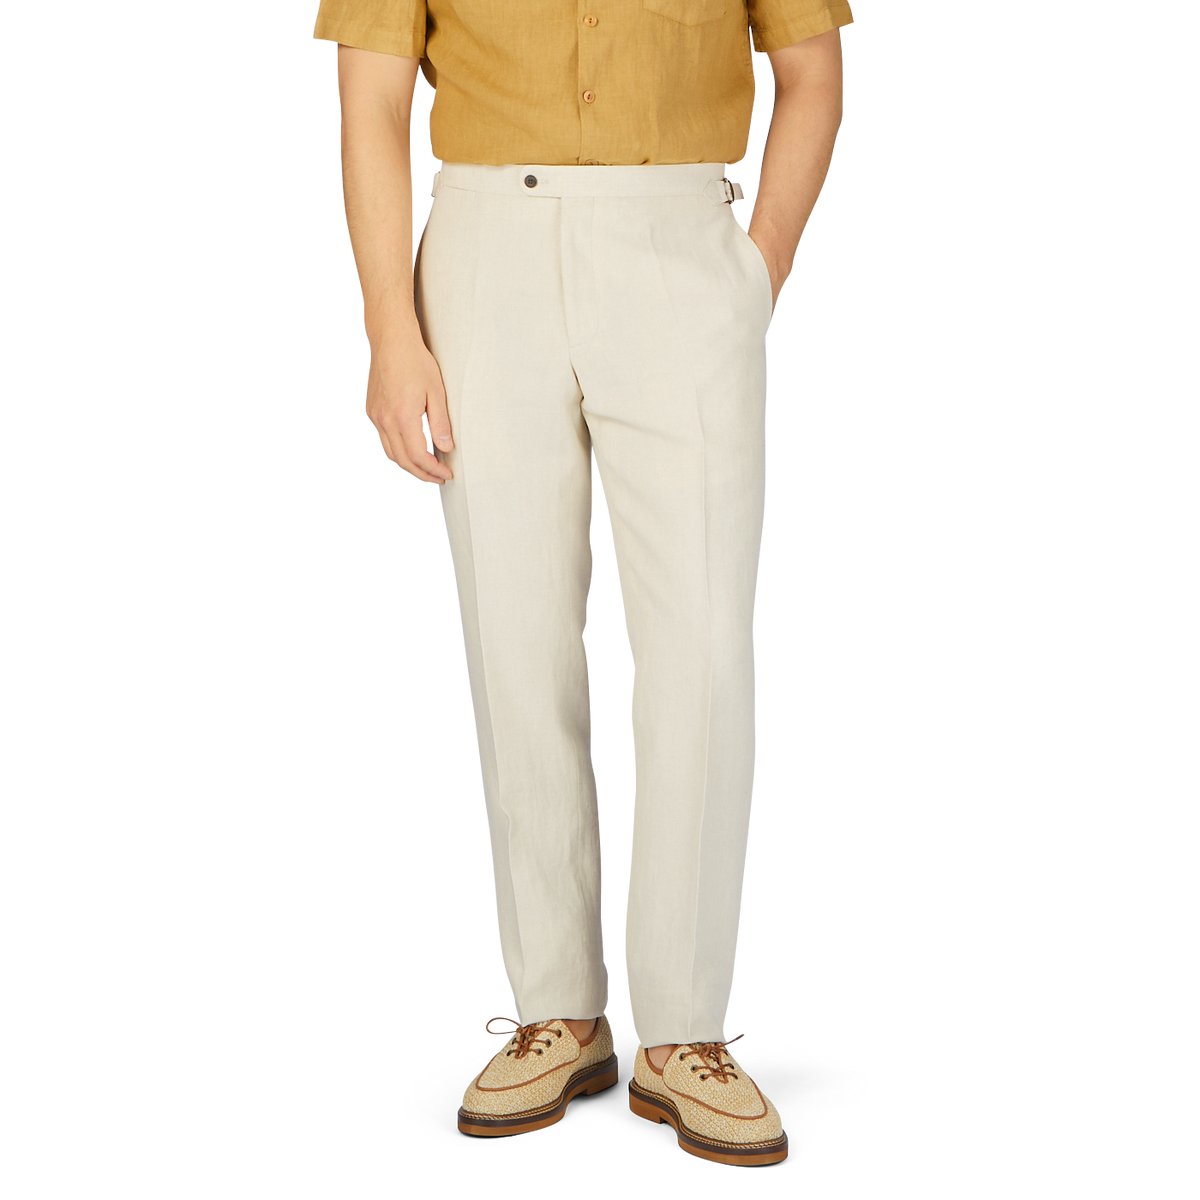 A man in Baltzar Sartorial Light Beige Pure Linen Flat Front Trousers.